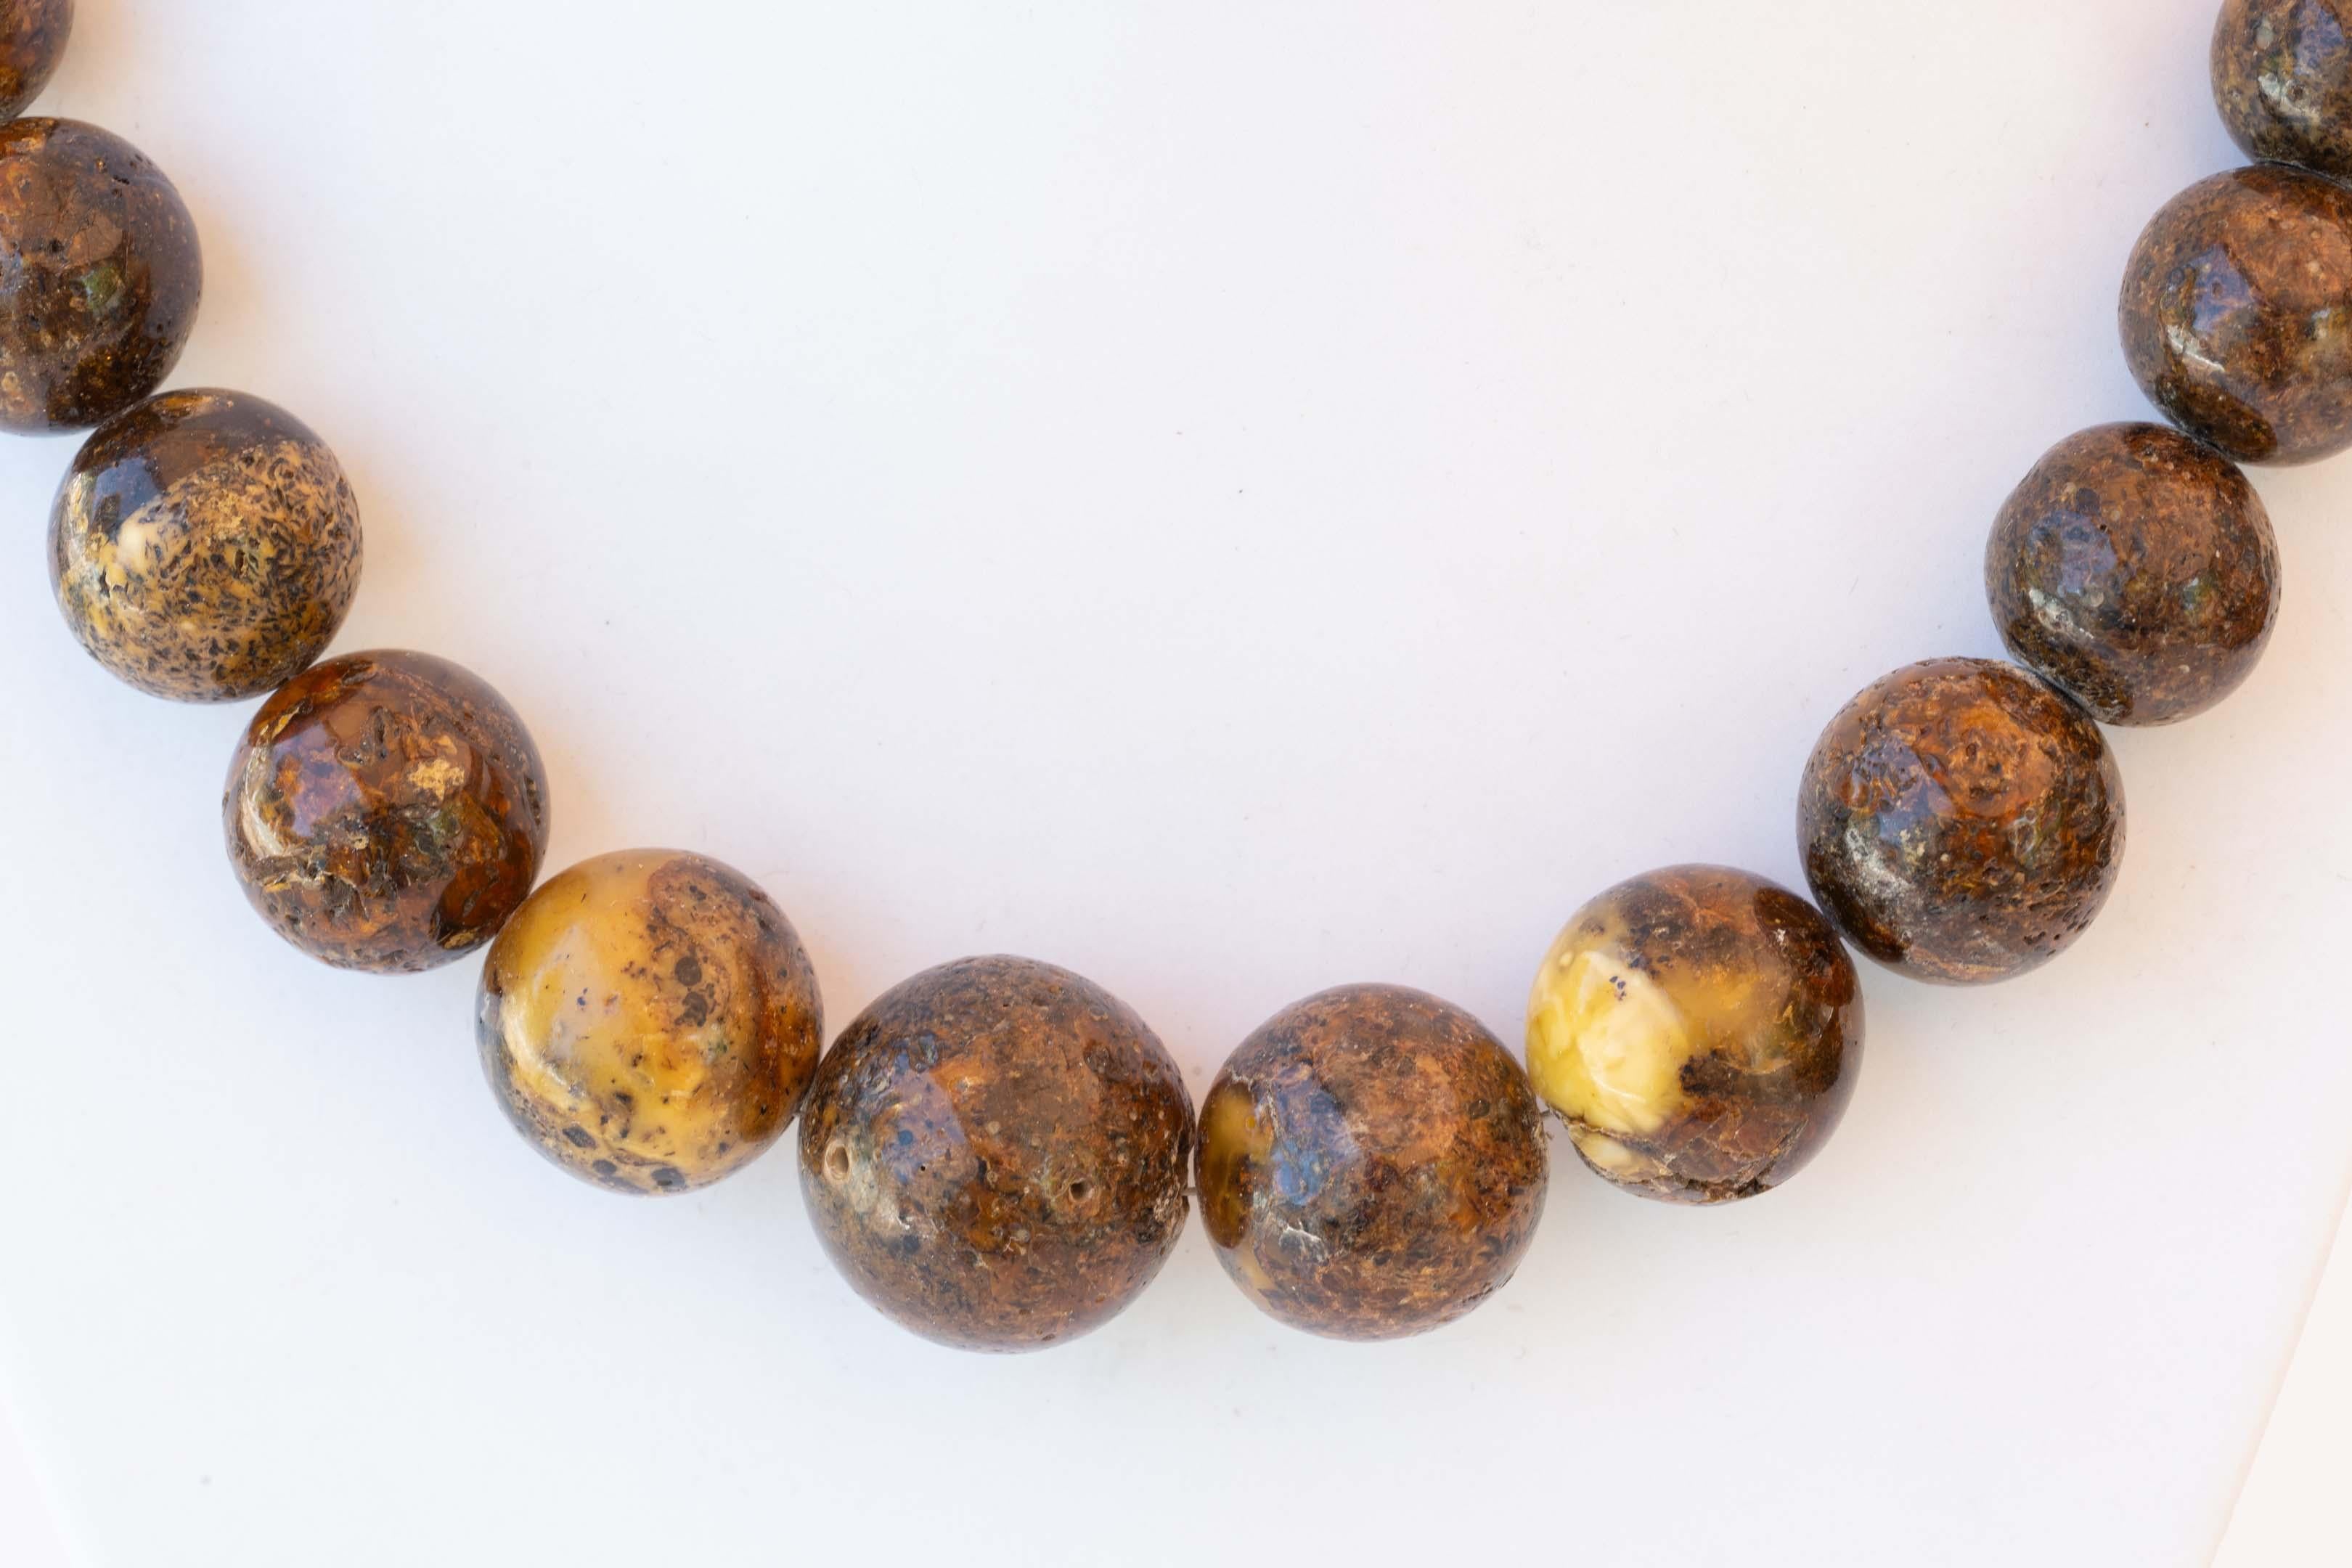 Collier d'ambre racine de Burmite naturelle mesurant 20 pouces de long, pesant 82 grammes. Les perles ont un diamètre compris entre 13 et 23 mm. Provenance de la région de Birmanie, testé en eau salée.